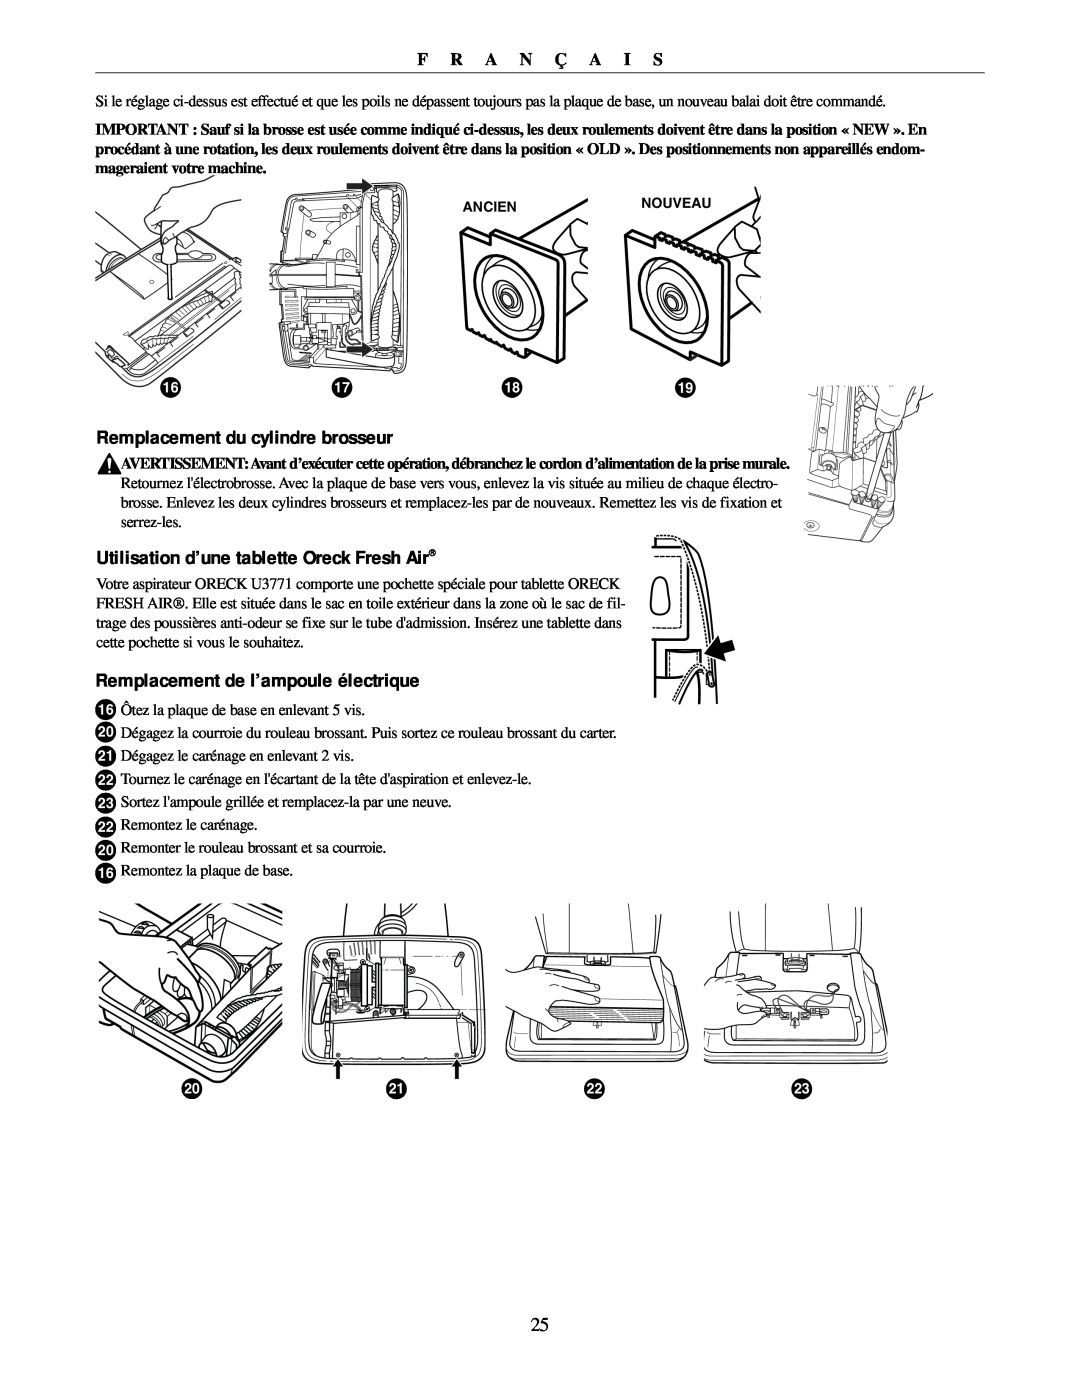 Oreck U3771 manual Remplacement du cylindre brosseur, Utilisation d’une tablette Oreck Fresh Air, F R A N Ç A I S 